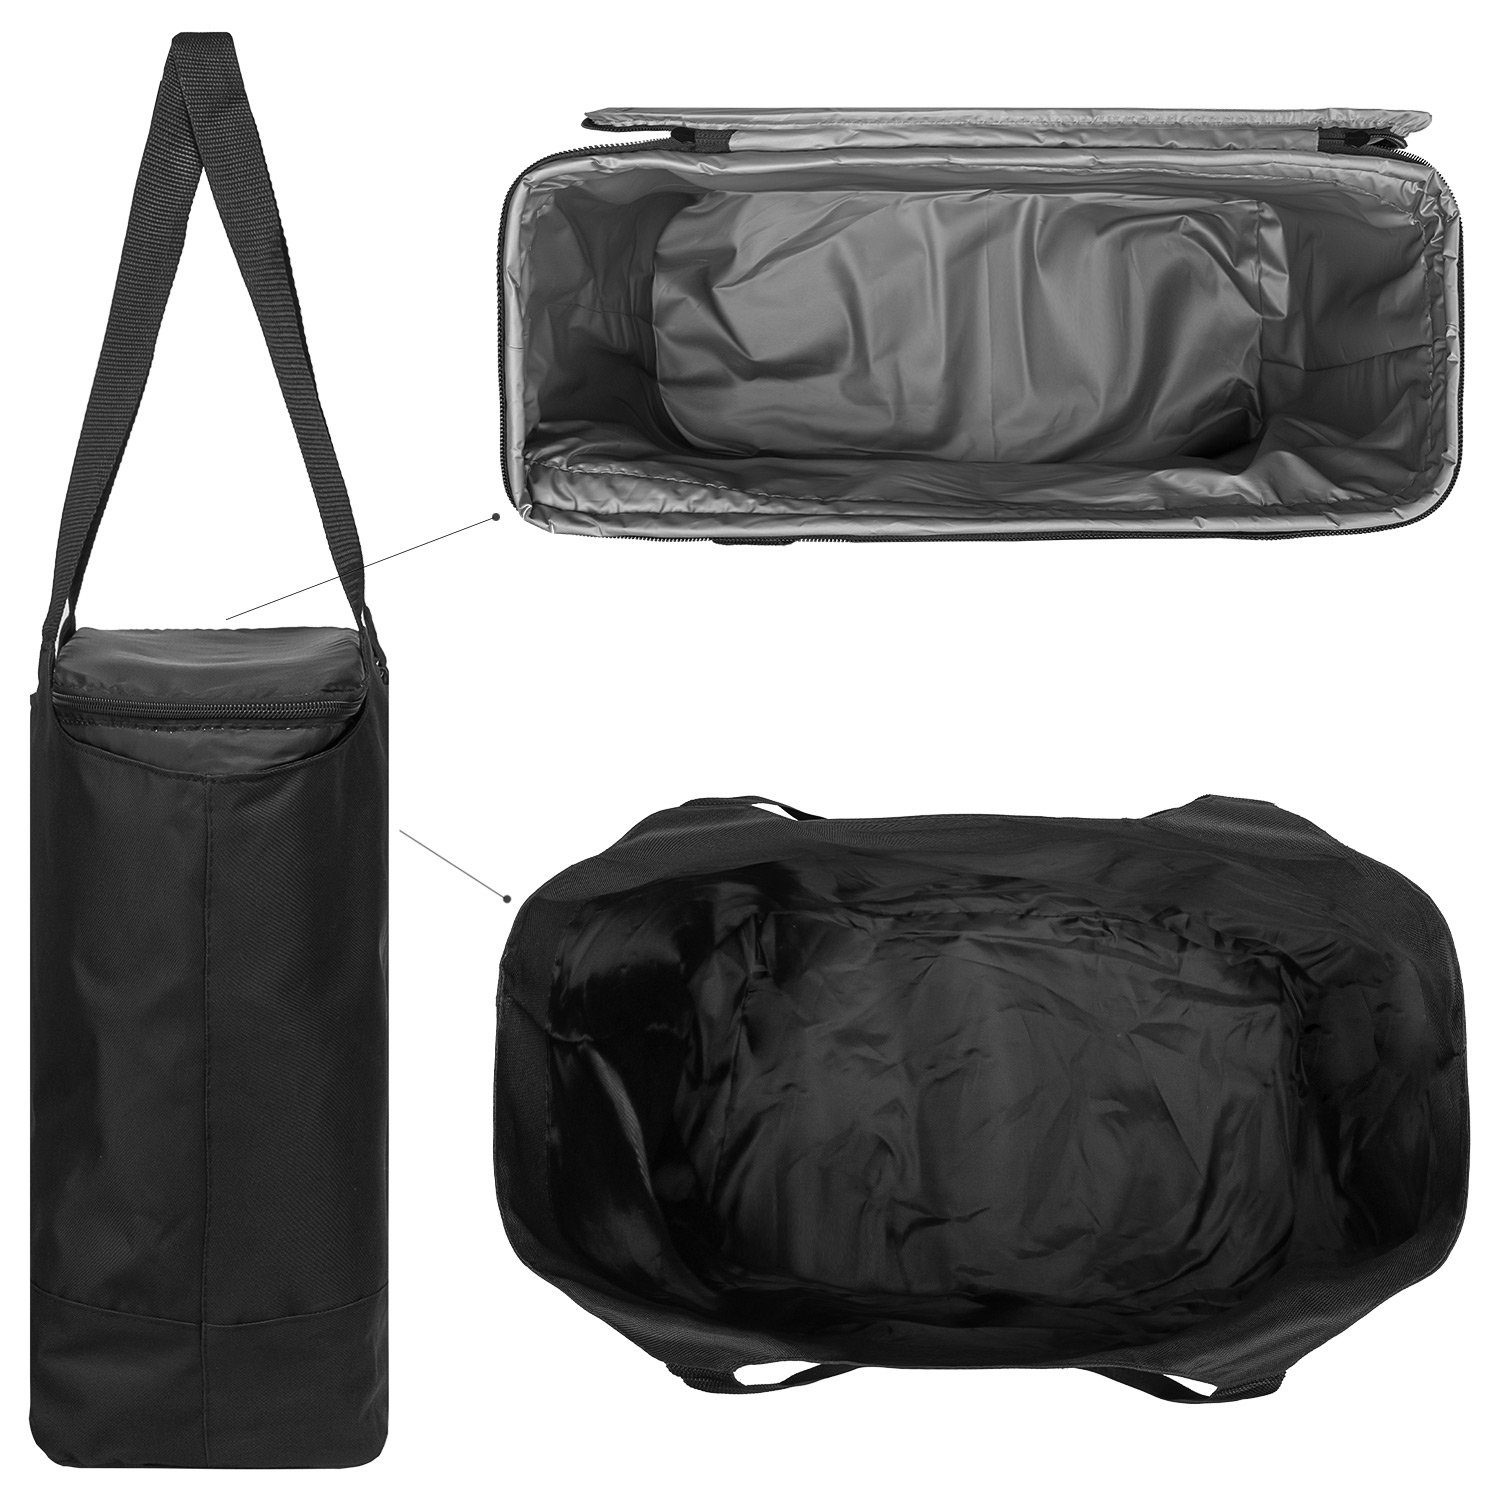 anndora Picknickkorb Kühltasche Einkaufstasche Design Kühlakku - Auswahl 2 zur 1 in + schwarz 